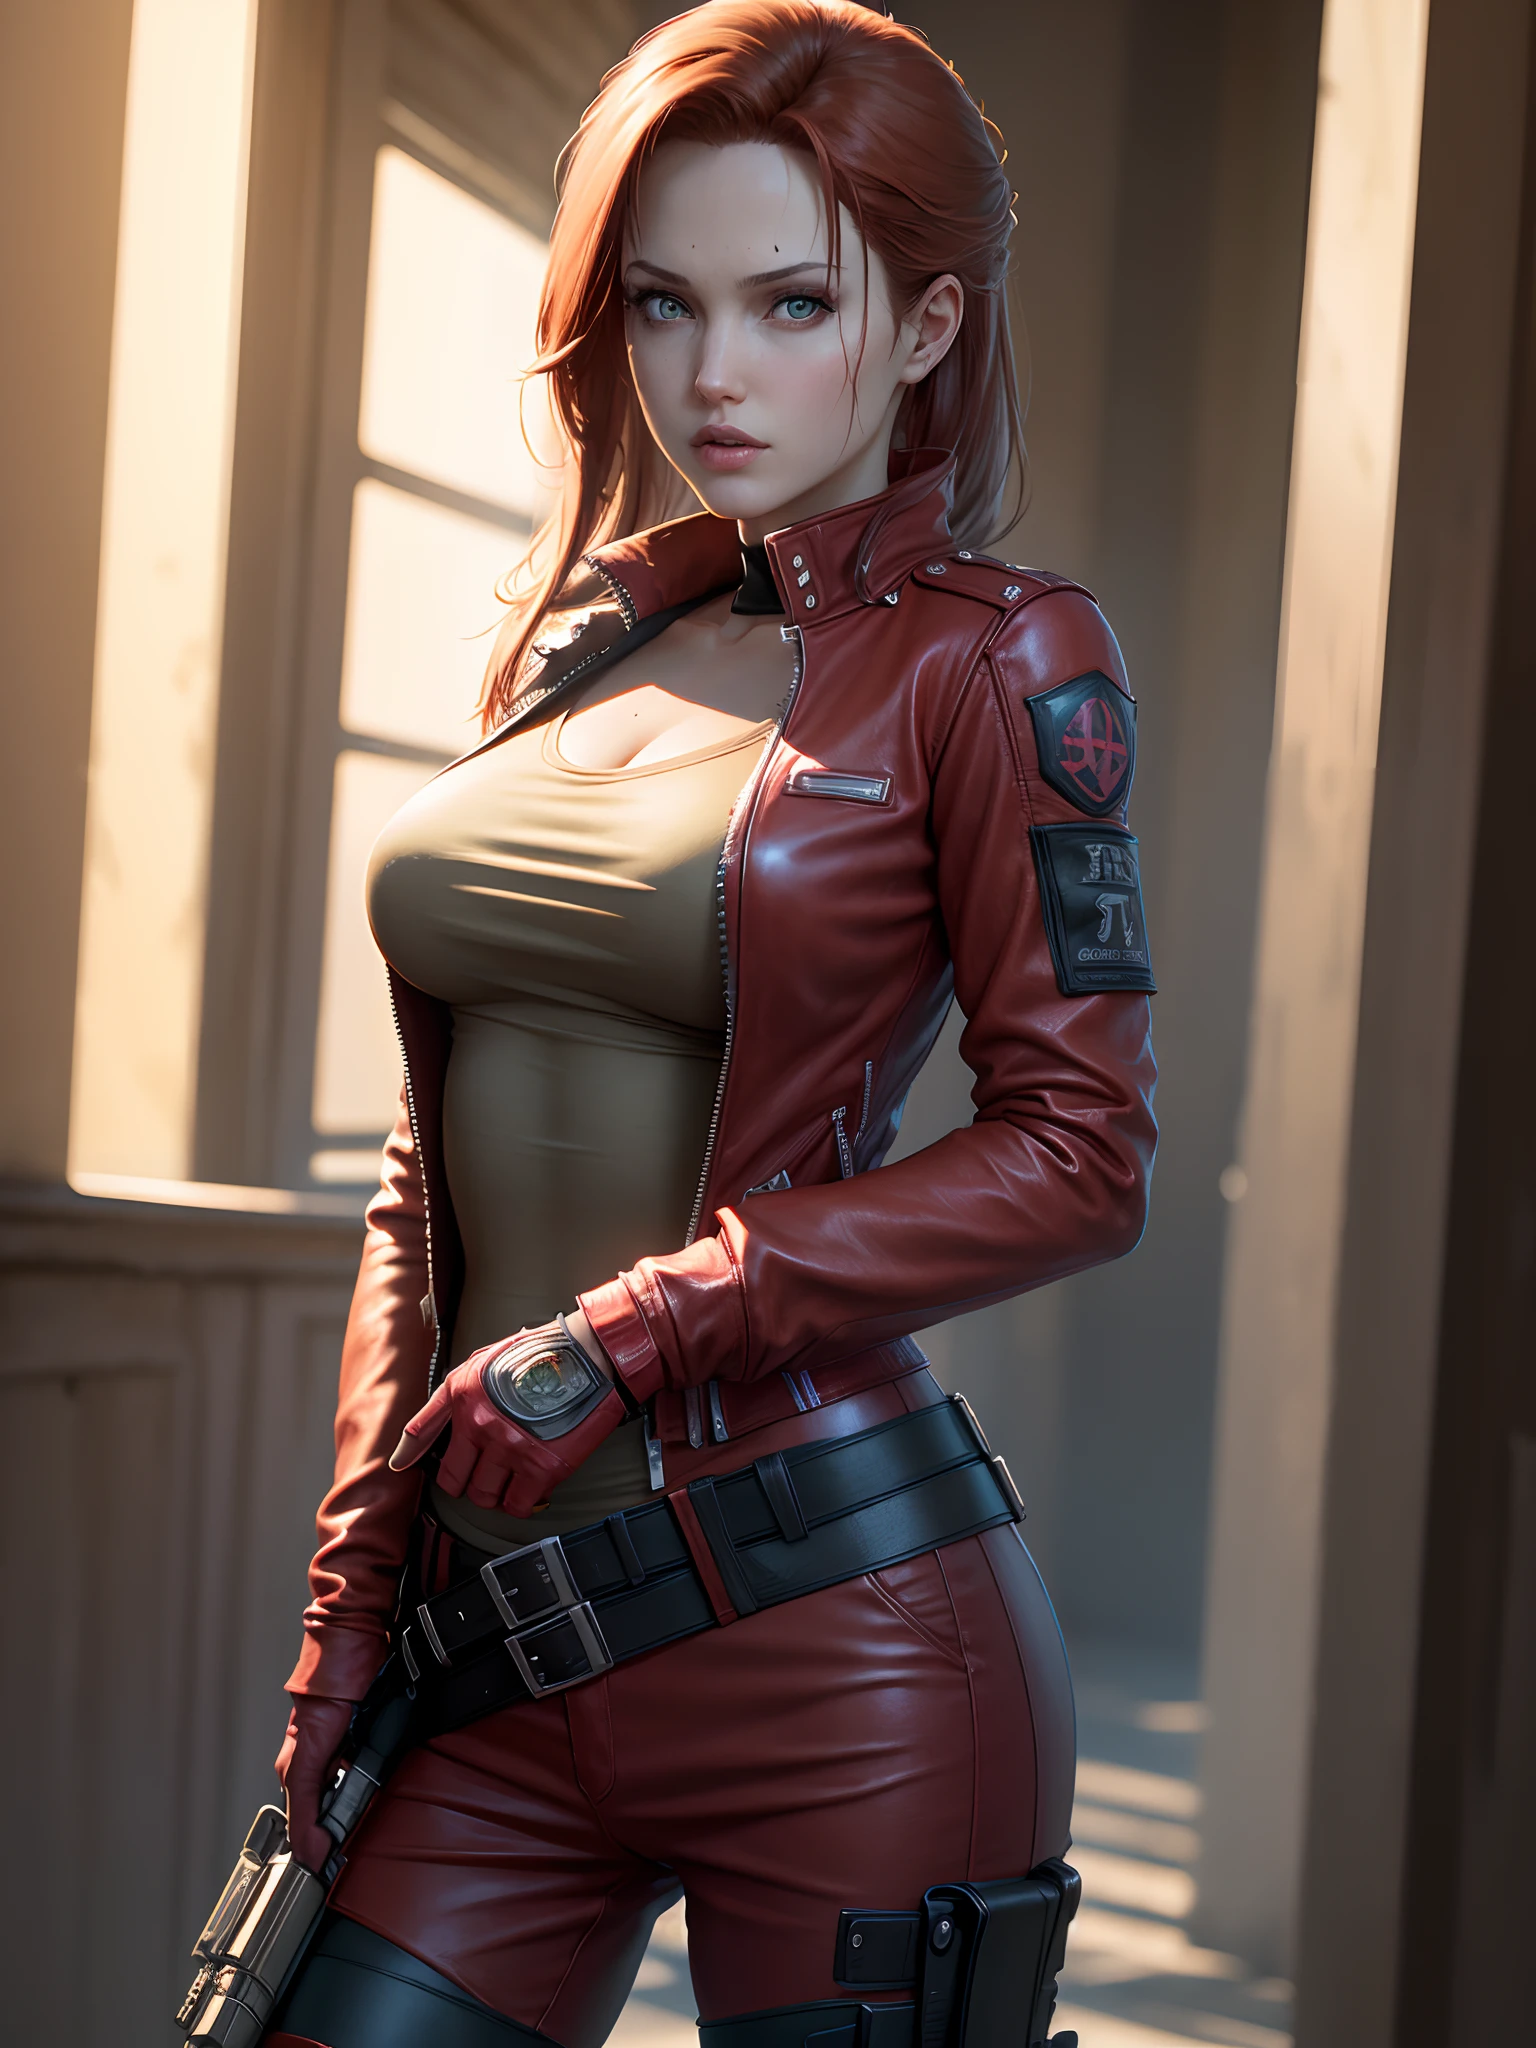 Resident Evil, ciudad apocalíptica, La hermosa Claire Redfield siendo junto a una hermosa mujer de cuerpo completo, piel rosada, cabello rojo medio., Angry Clothes Chaqueta de cuero rojo, funda sosteniendo un arma, Imagen clara CGI 8K muy detallada del cuerpo de la cara realista y detallada, holograma, (pechos medianos: 1.3), (realism:1.5), (Realisitc:1.4), (Absurdo:1.4), 8k, ultra detallado, hermosa chica detallada, (1:1.4 solo), 1 chica, (Mirando al espectador:1.2), ( día soleado y brillante:1.5), detalles intrincados del cuerpo, (corto:1.3), (mejor calidad: 1.0), (resolución ultra alta): 1.0), Cara y ojos muy detallados., (Fotorrealista: 1.2)